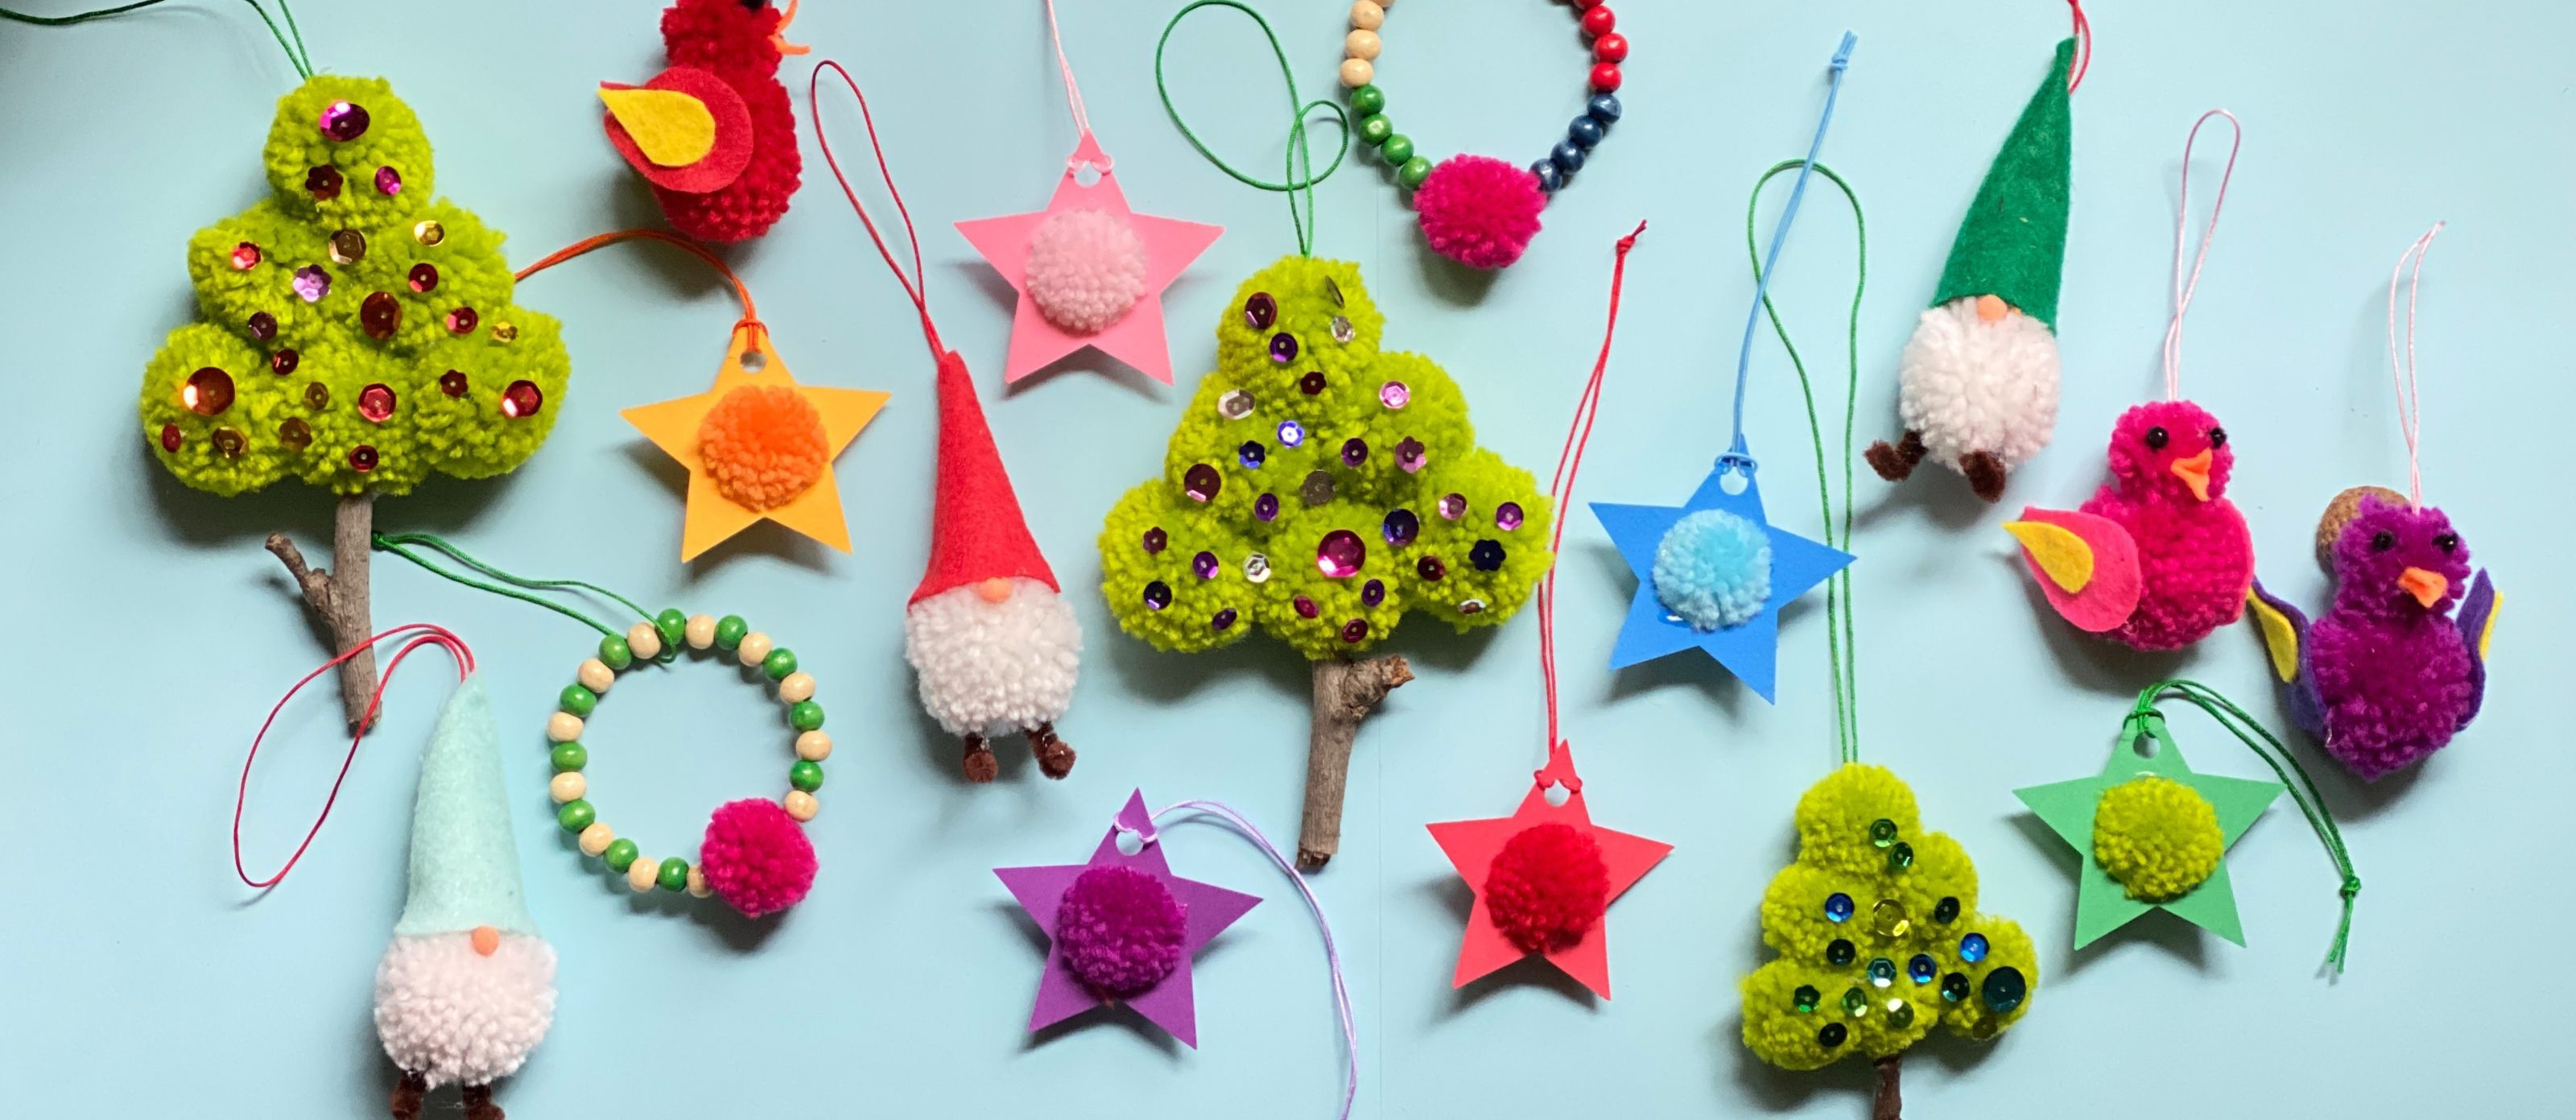 Pom Pom Christmas Ornament for Kids - Life Over C's